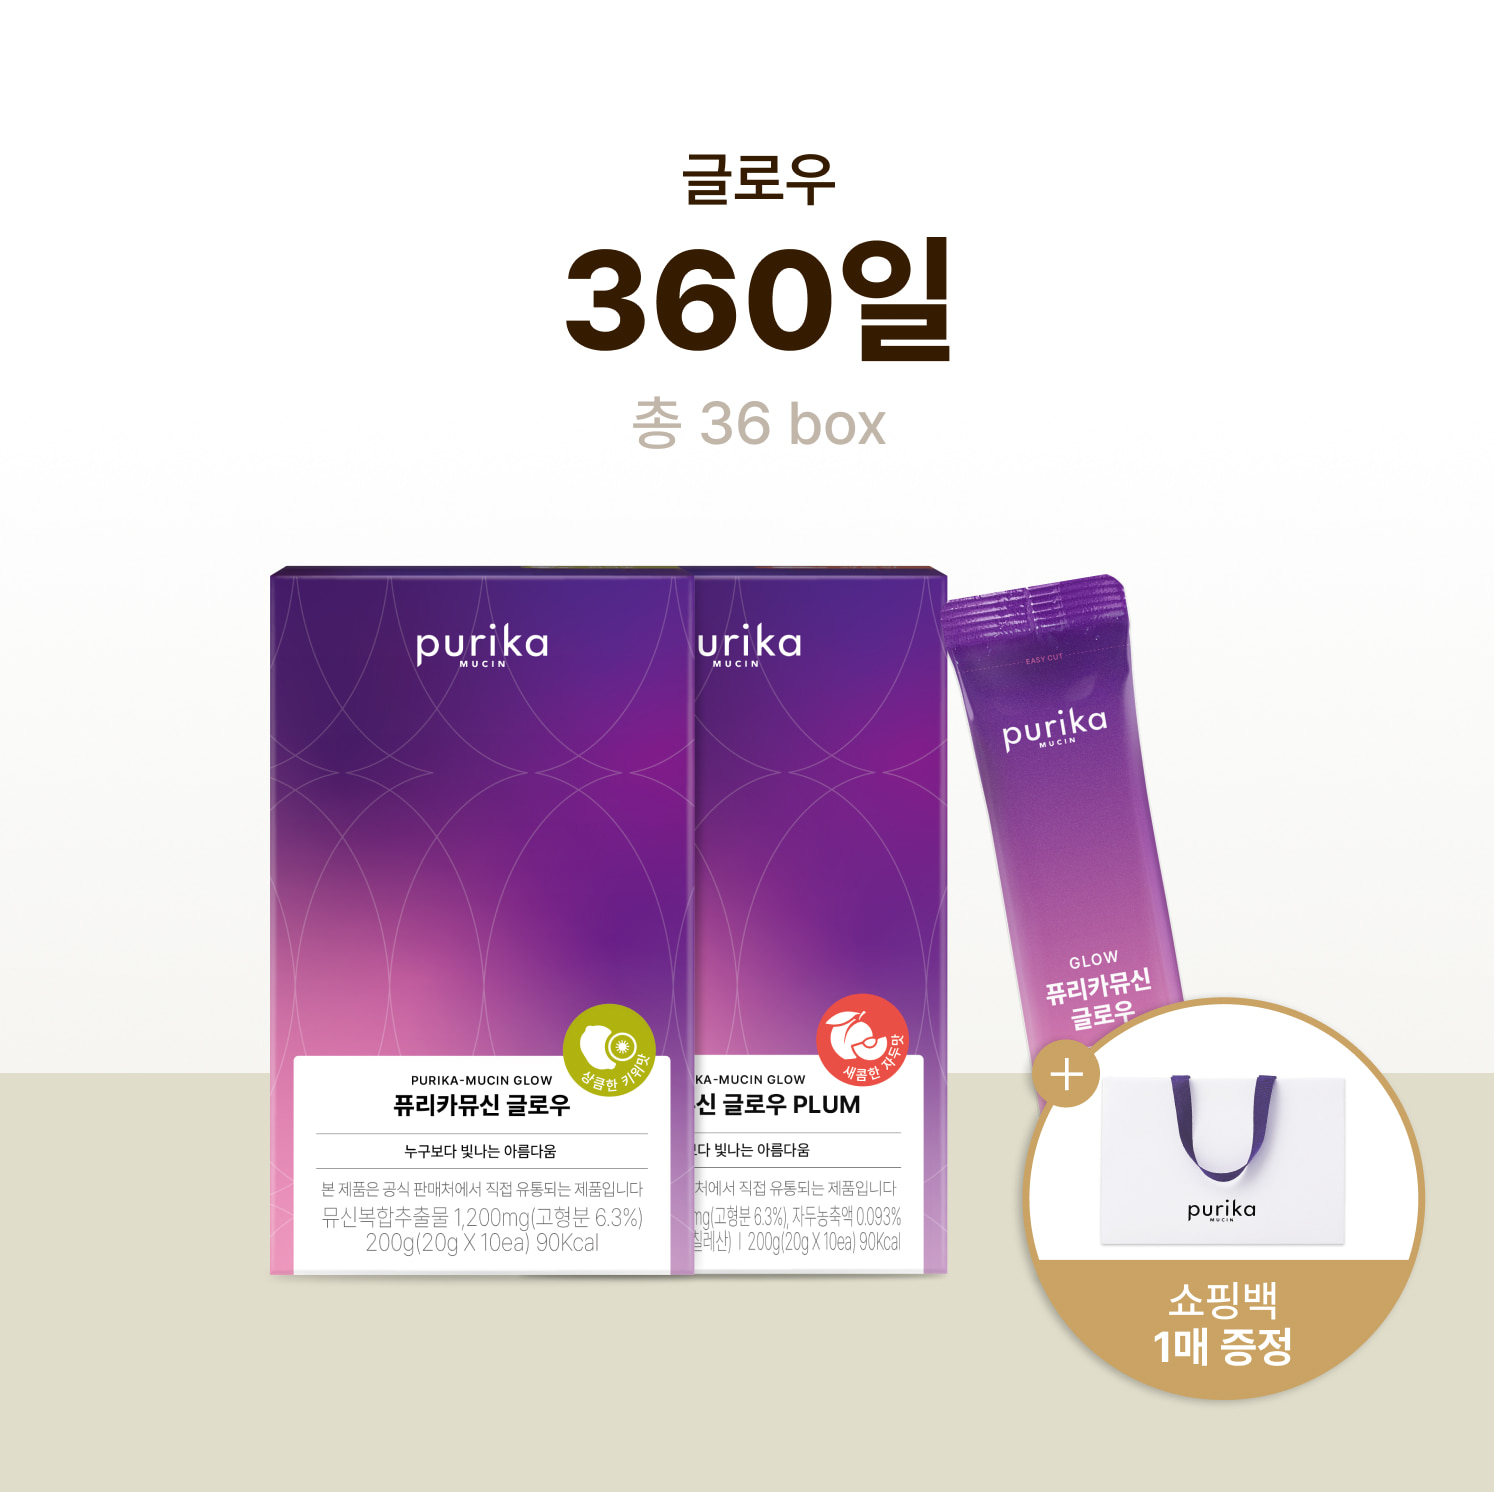 뮤신 글로우 (36box, 360일) + 쇼핑백 증정(1매)